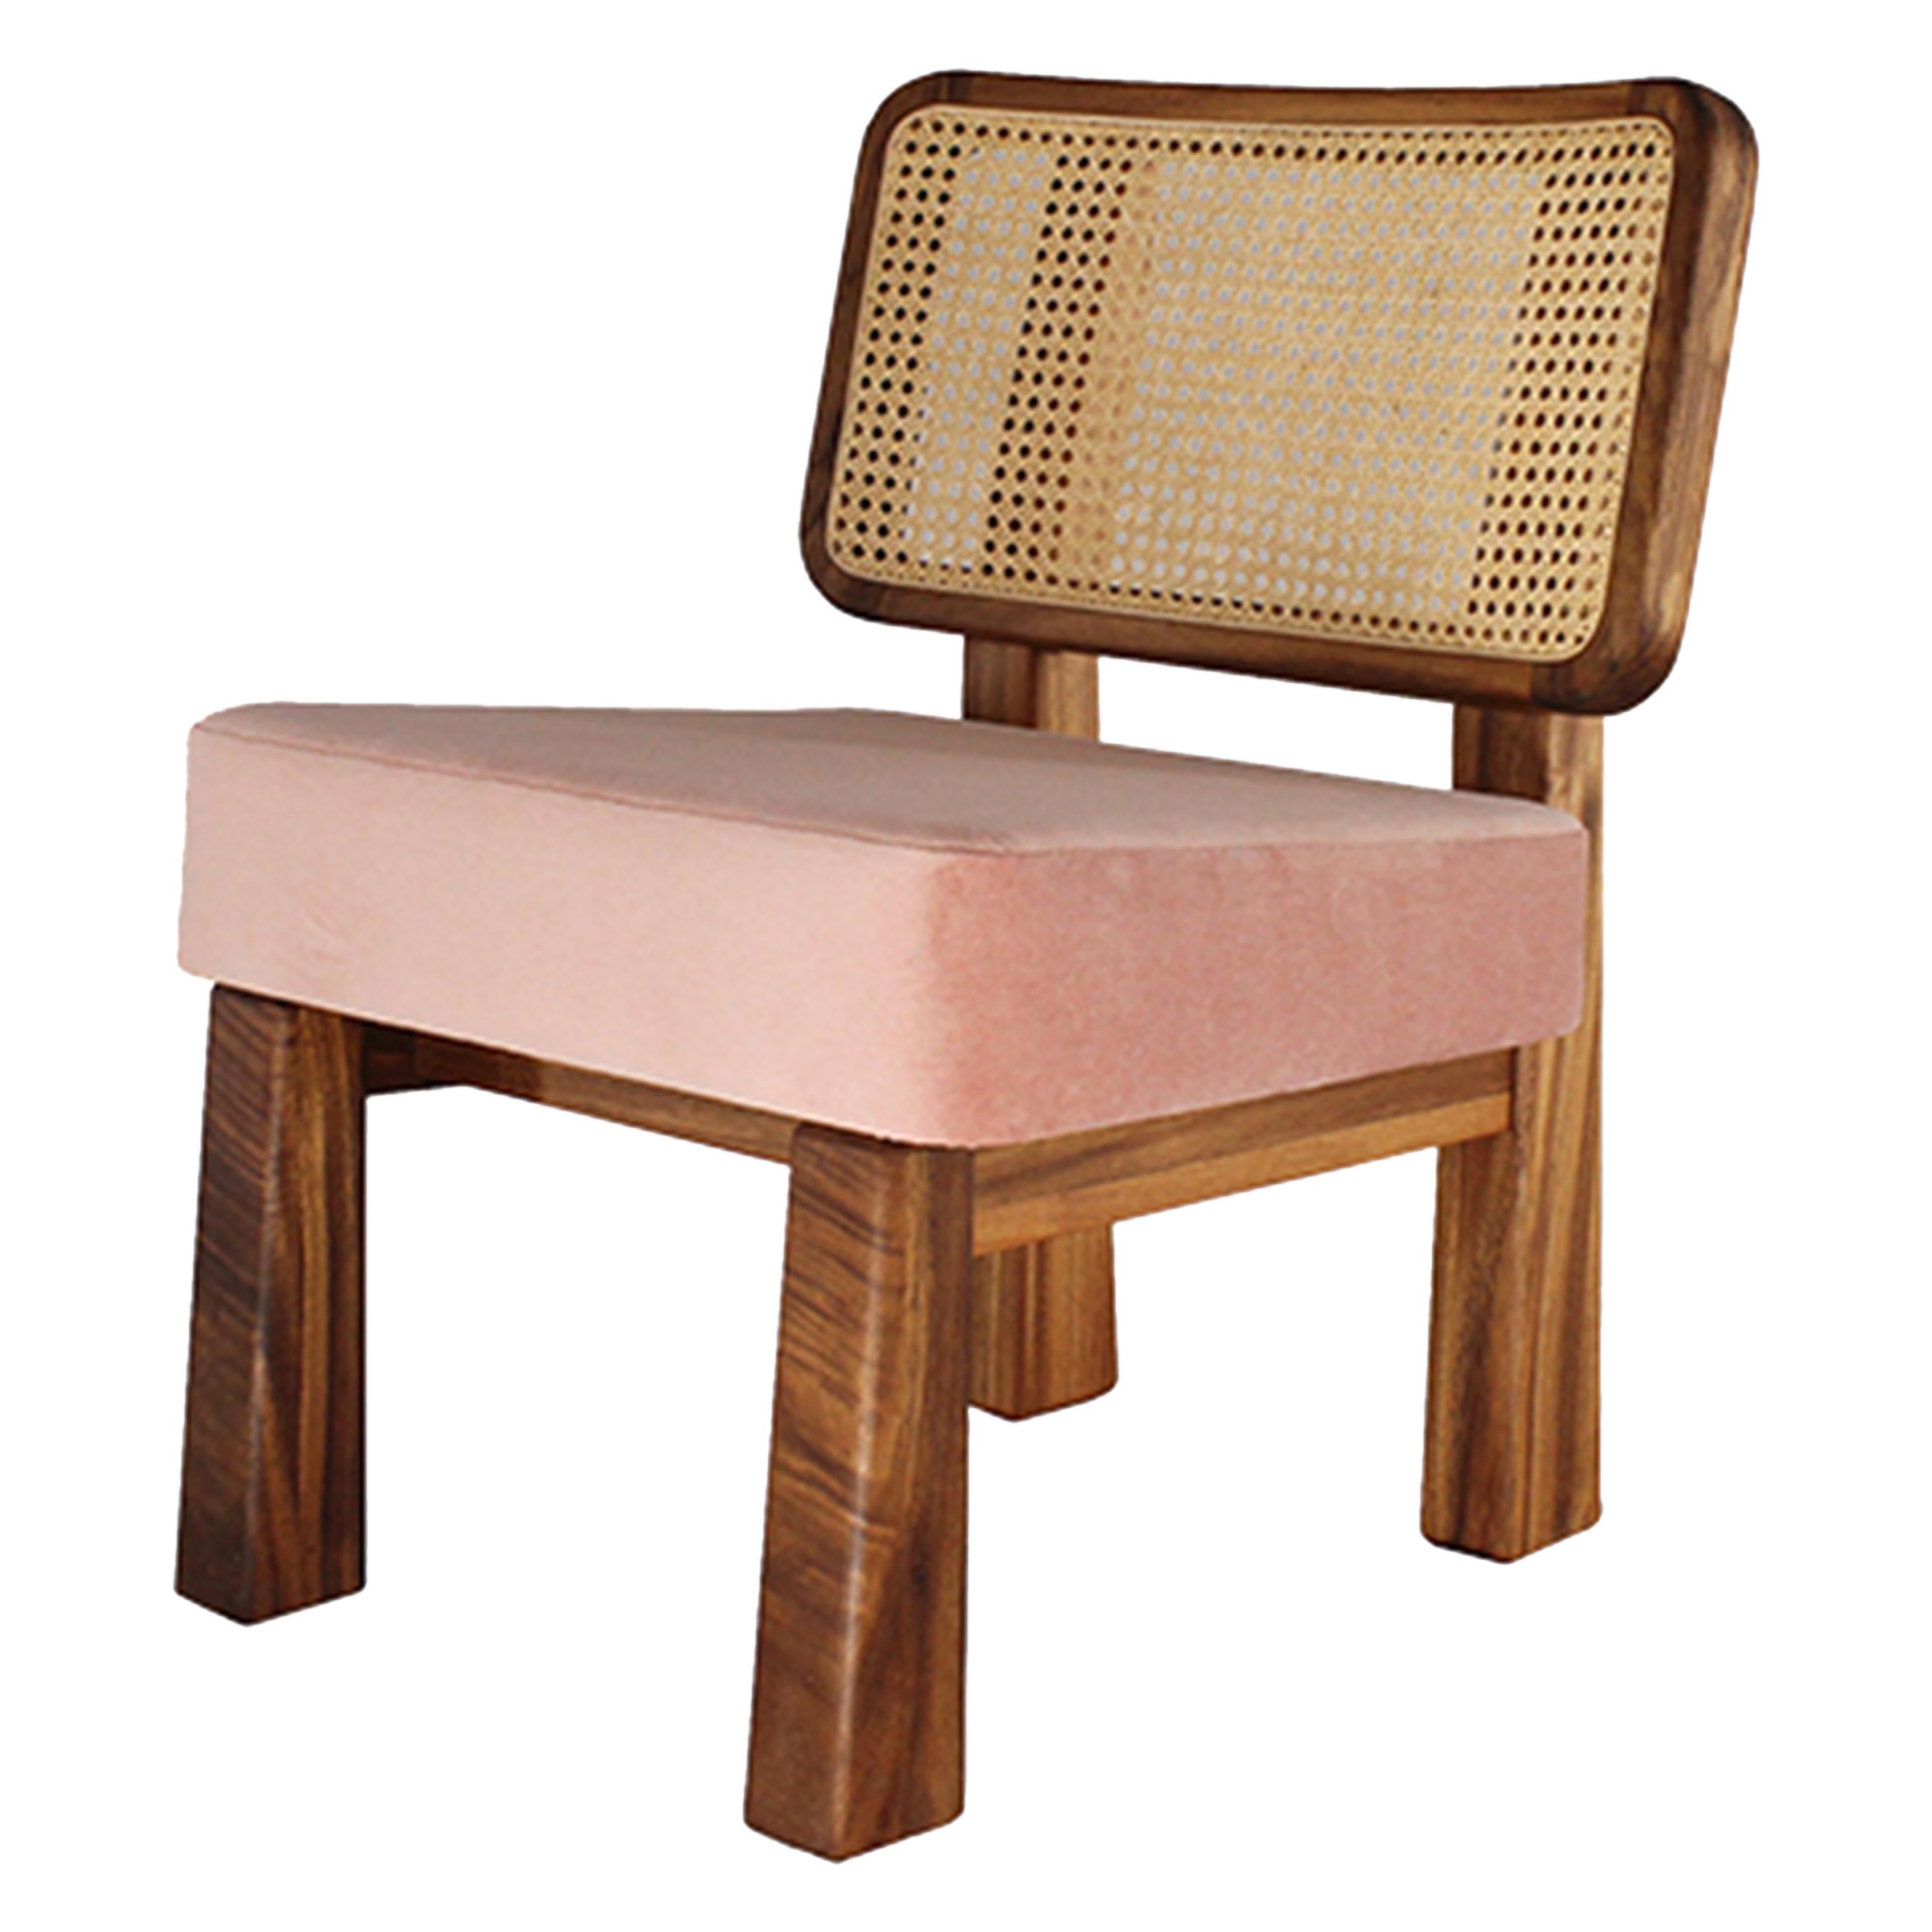 Colima Low Chair Massivholz und Geflechtrücken:: zeitgenössisches mexikanisches Design